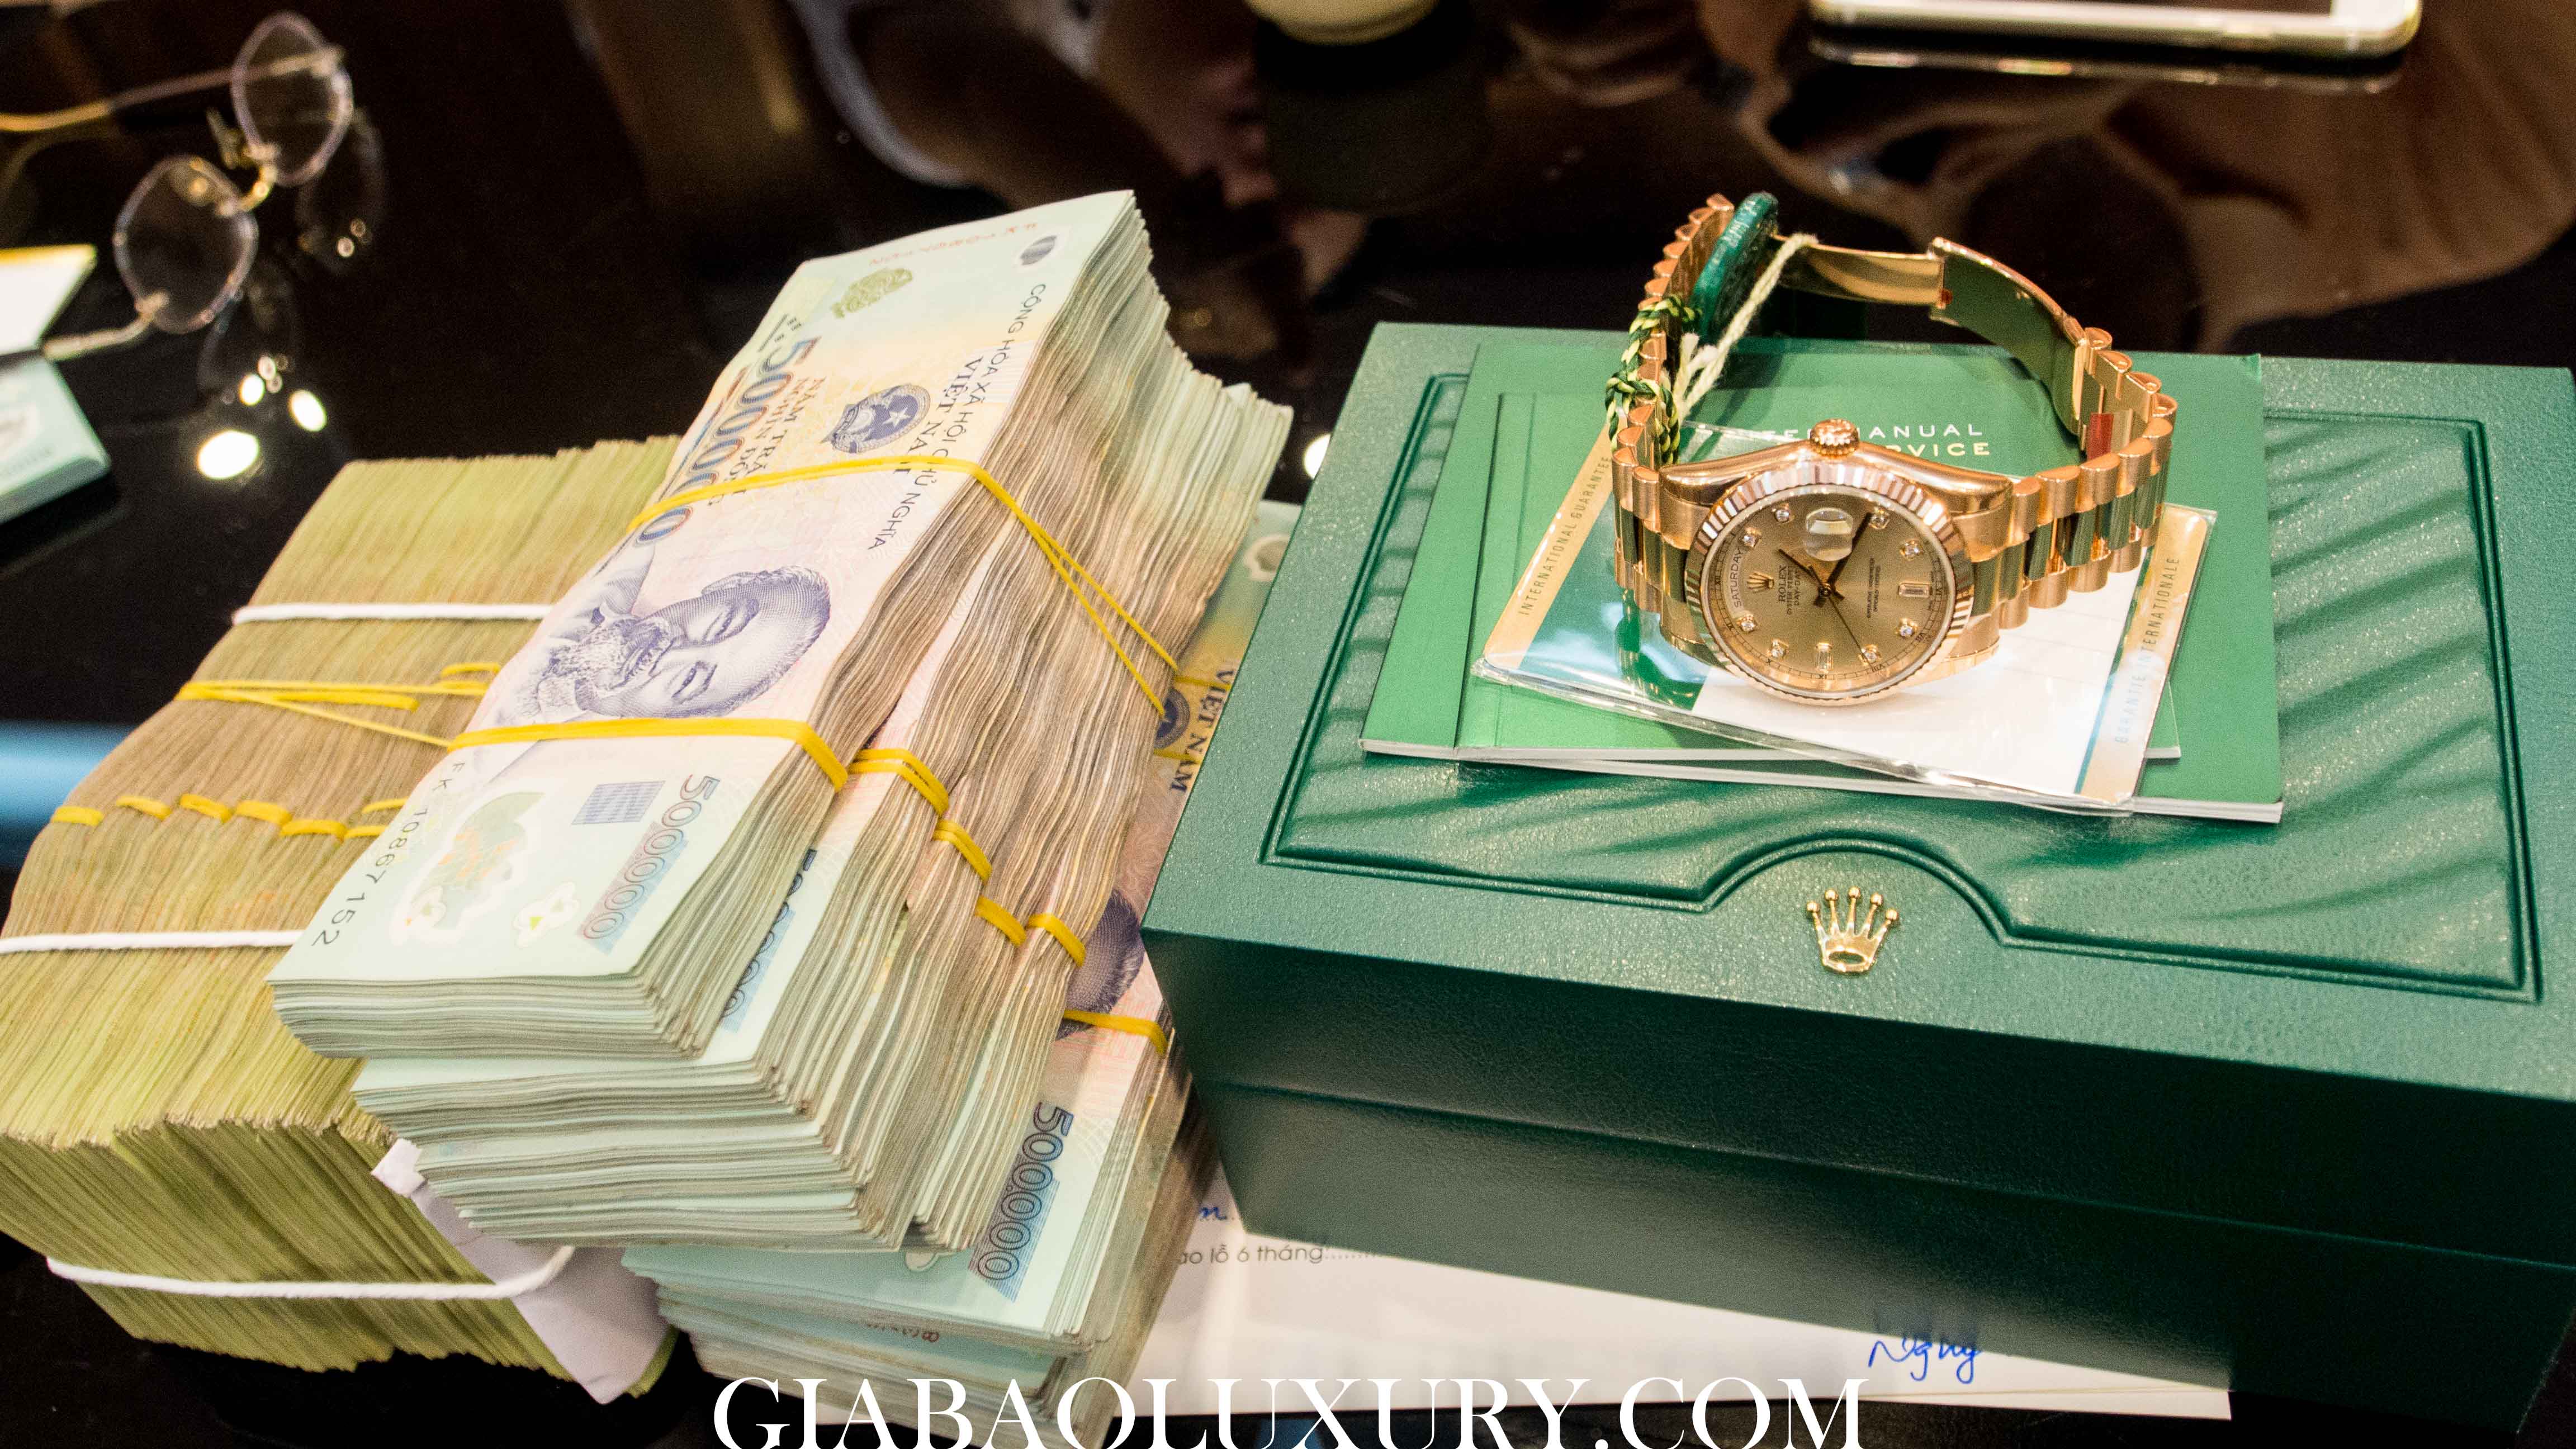 Thu mua đồng hồ Rolex Day-date tại Gia Bảo Luxury Hà Nội